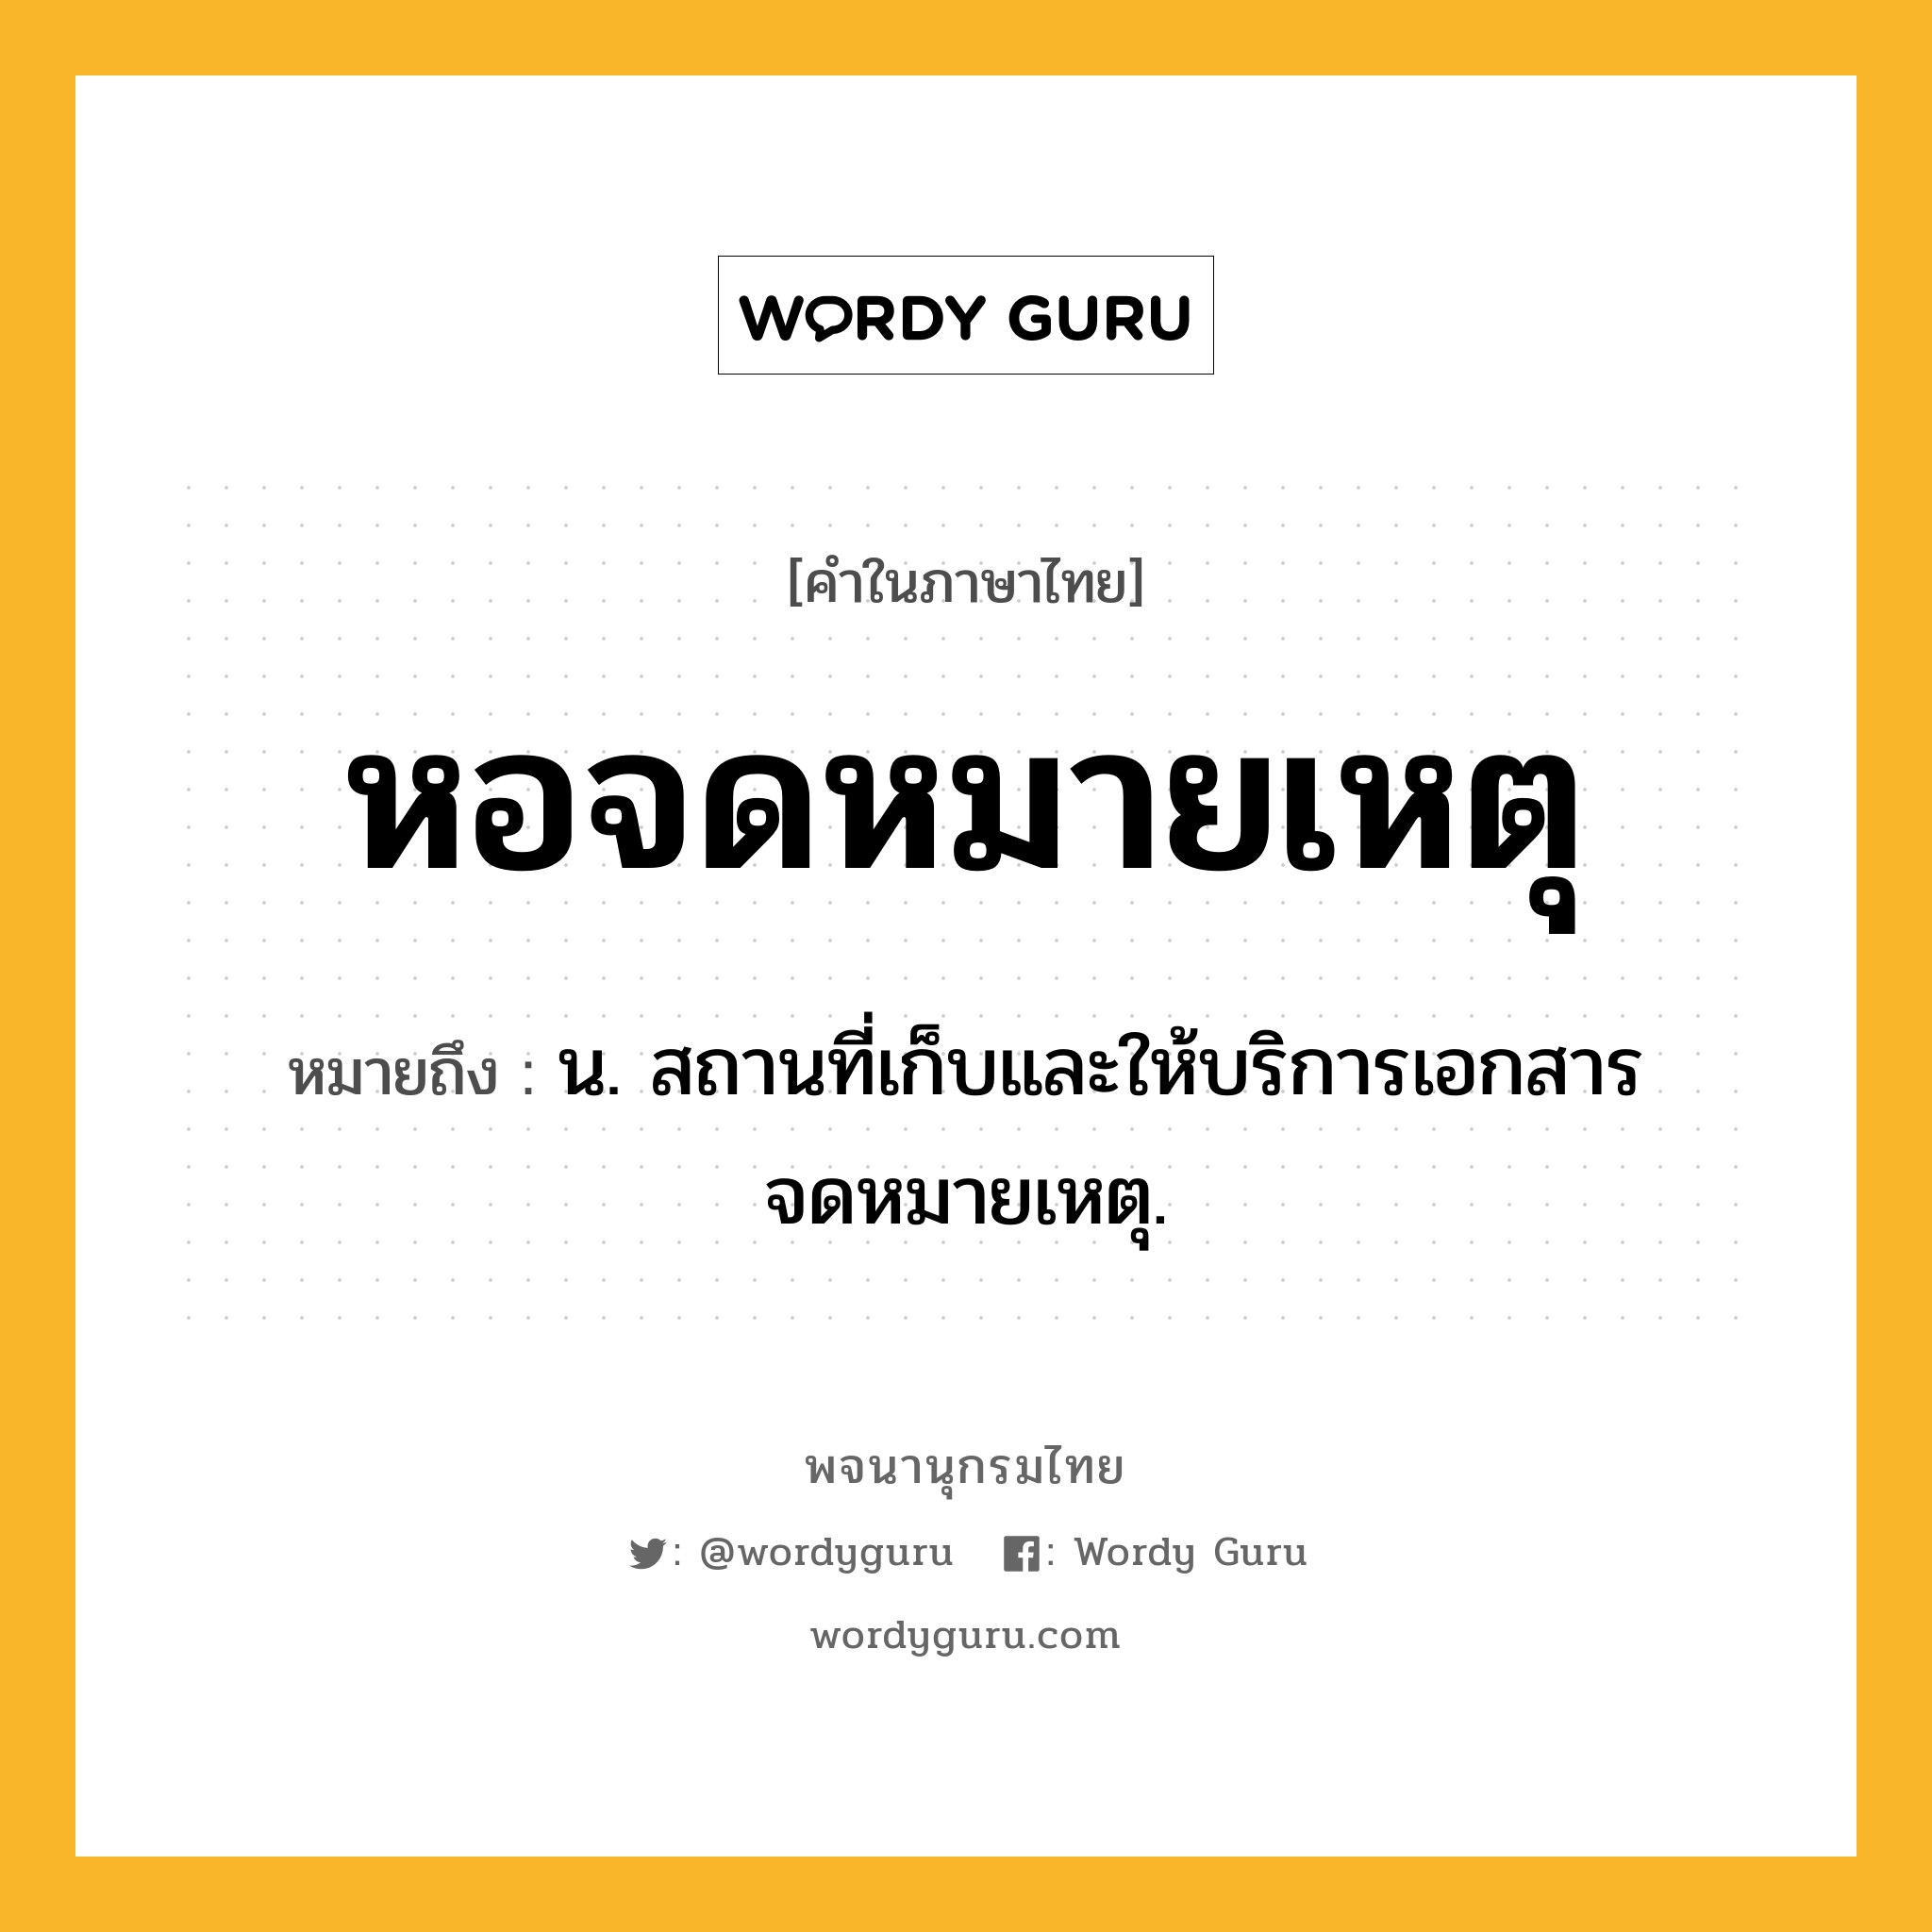 หอจดหมายเหตุ หมายถึงอะไร?, คำในภาษาไทย หอจดหมายเหตุ หมายถึง น. สถานที่เก็บและให้บริการเอกสารจดหมายเหตุ.